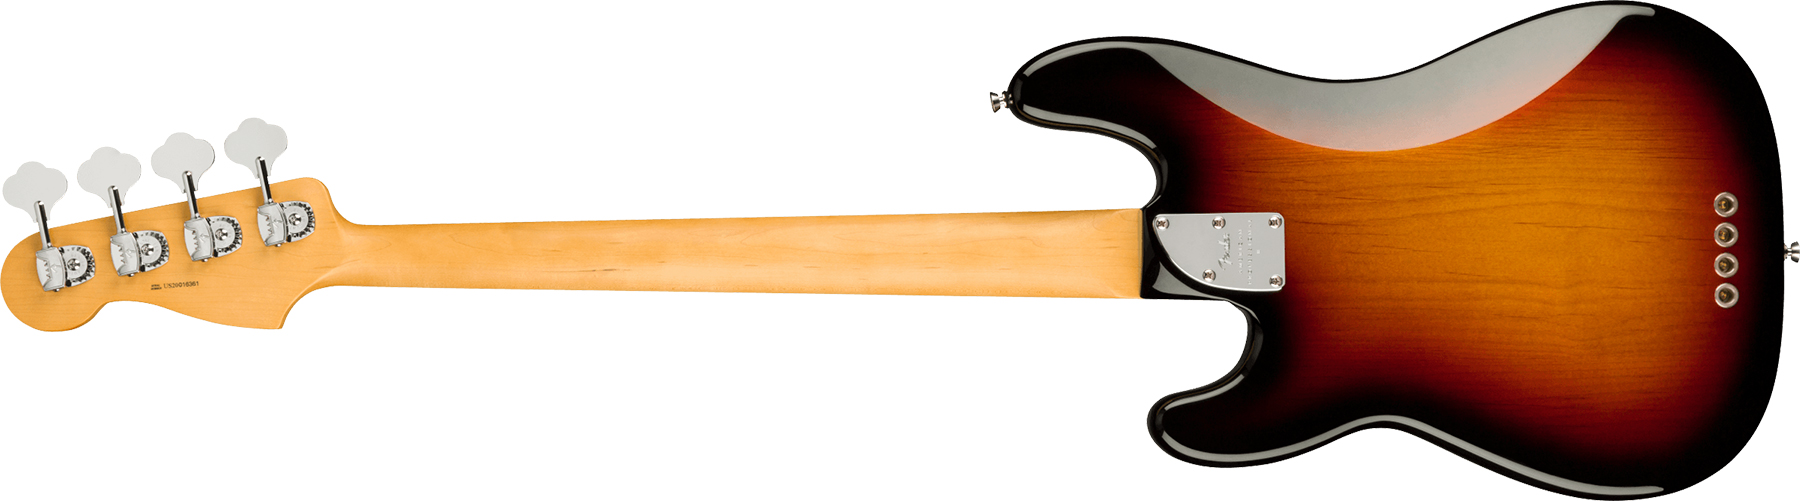 Fender Precision Bass American Professional Ii Usa Rw - 3-color Sunburst - Bajo eléctrico de cuerpo sólido - Variation 1